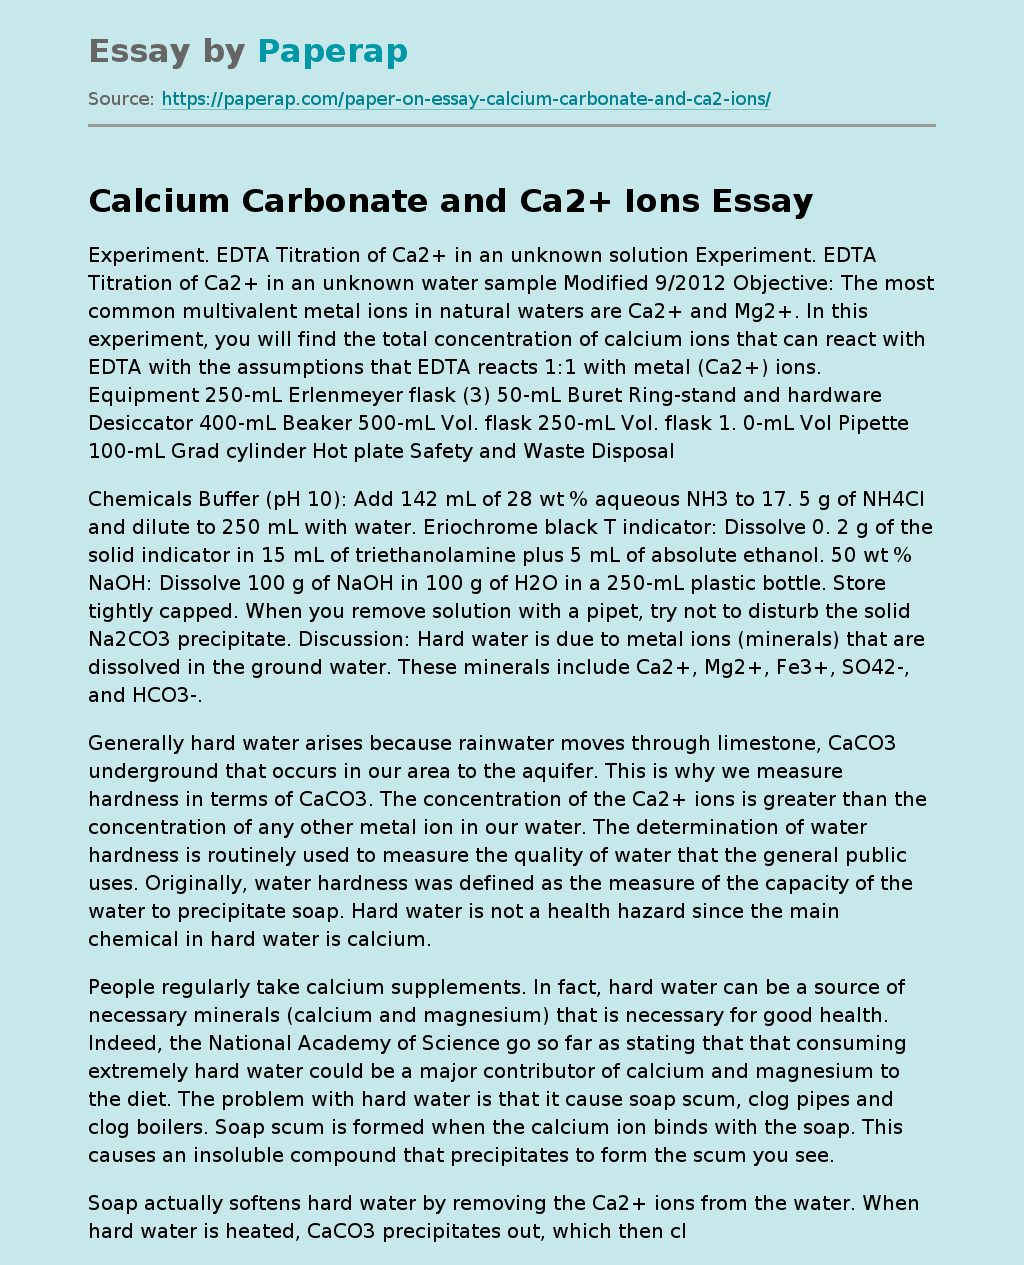 Calcium Carbonate and Ca2+ Ions